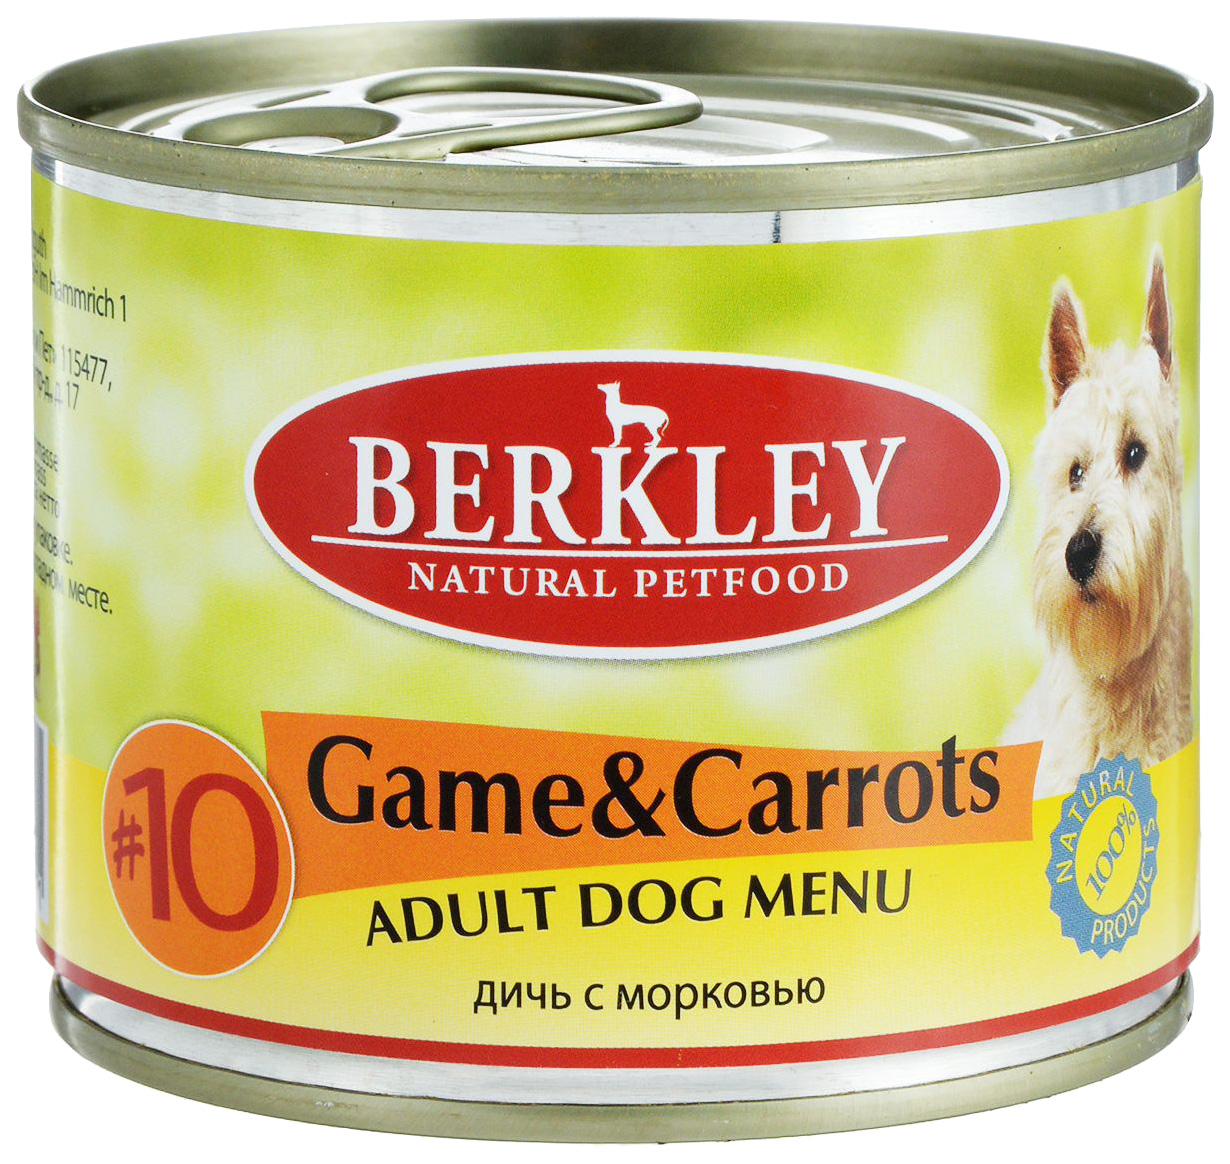 фото Консервы для собак berkley menu, оленина, 6шт, 200г